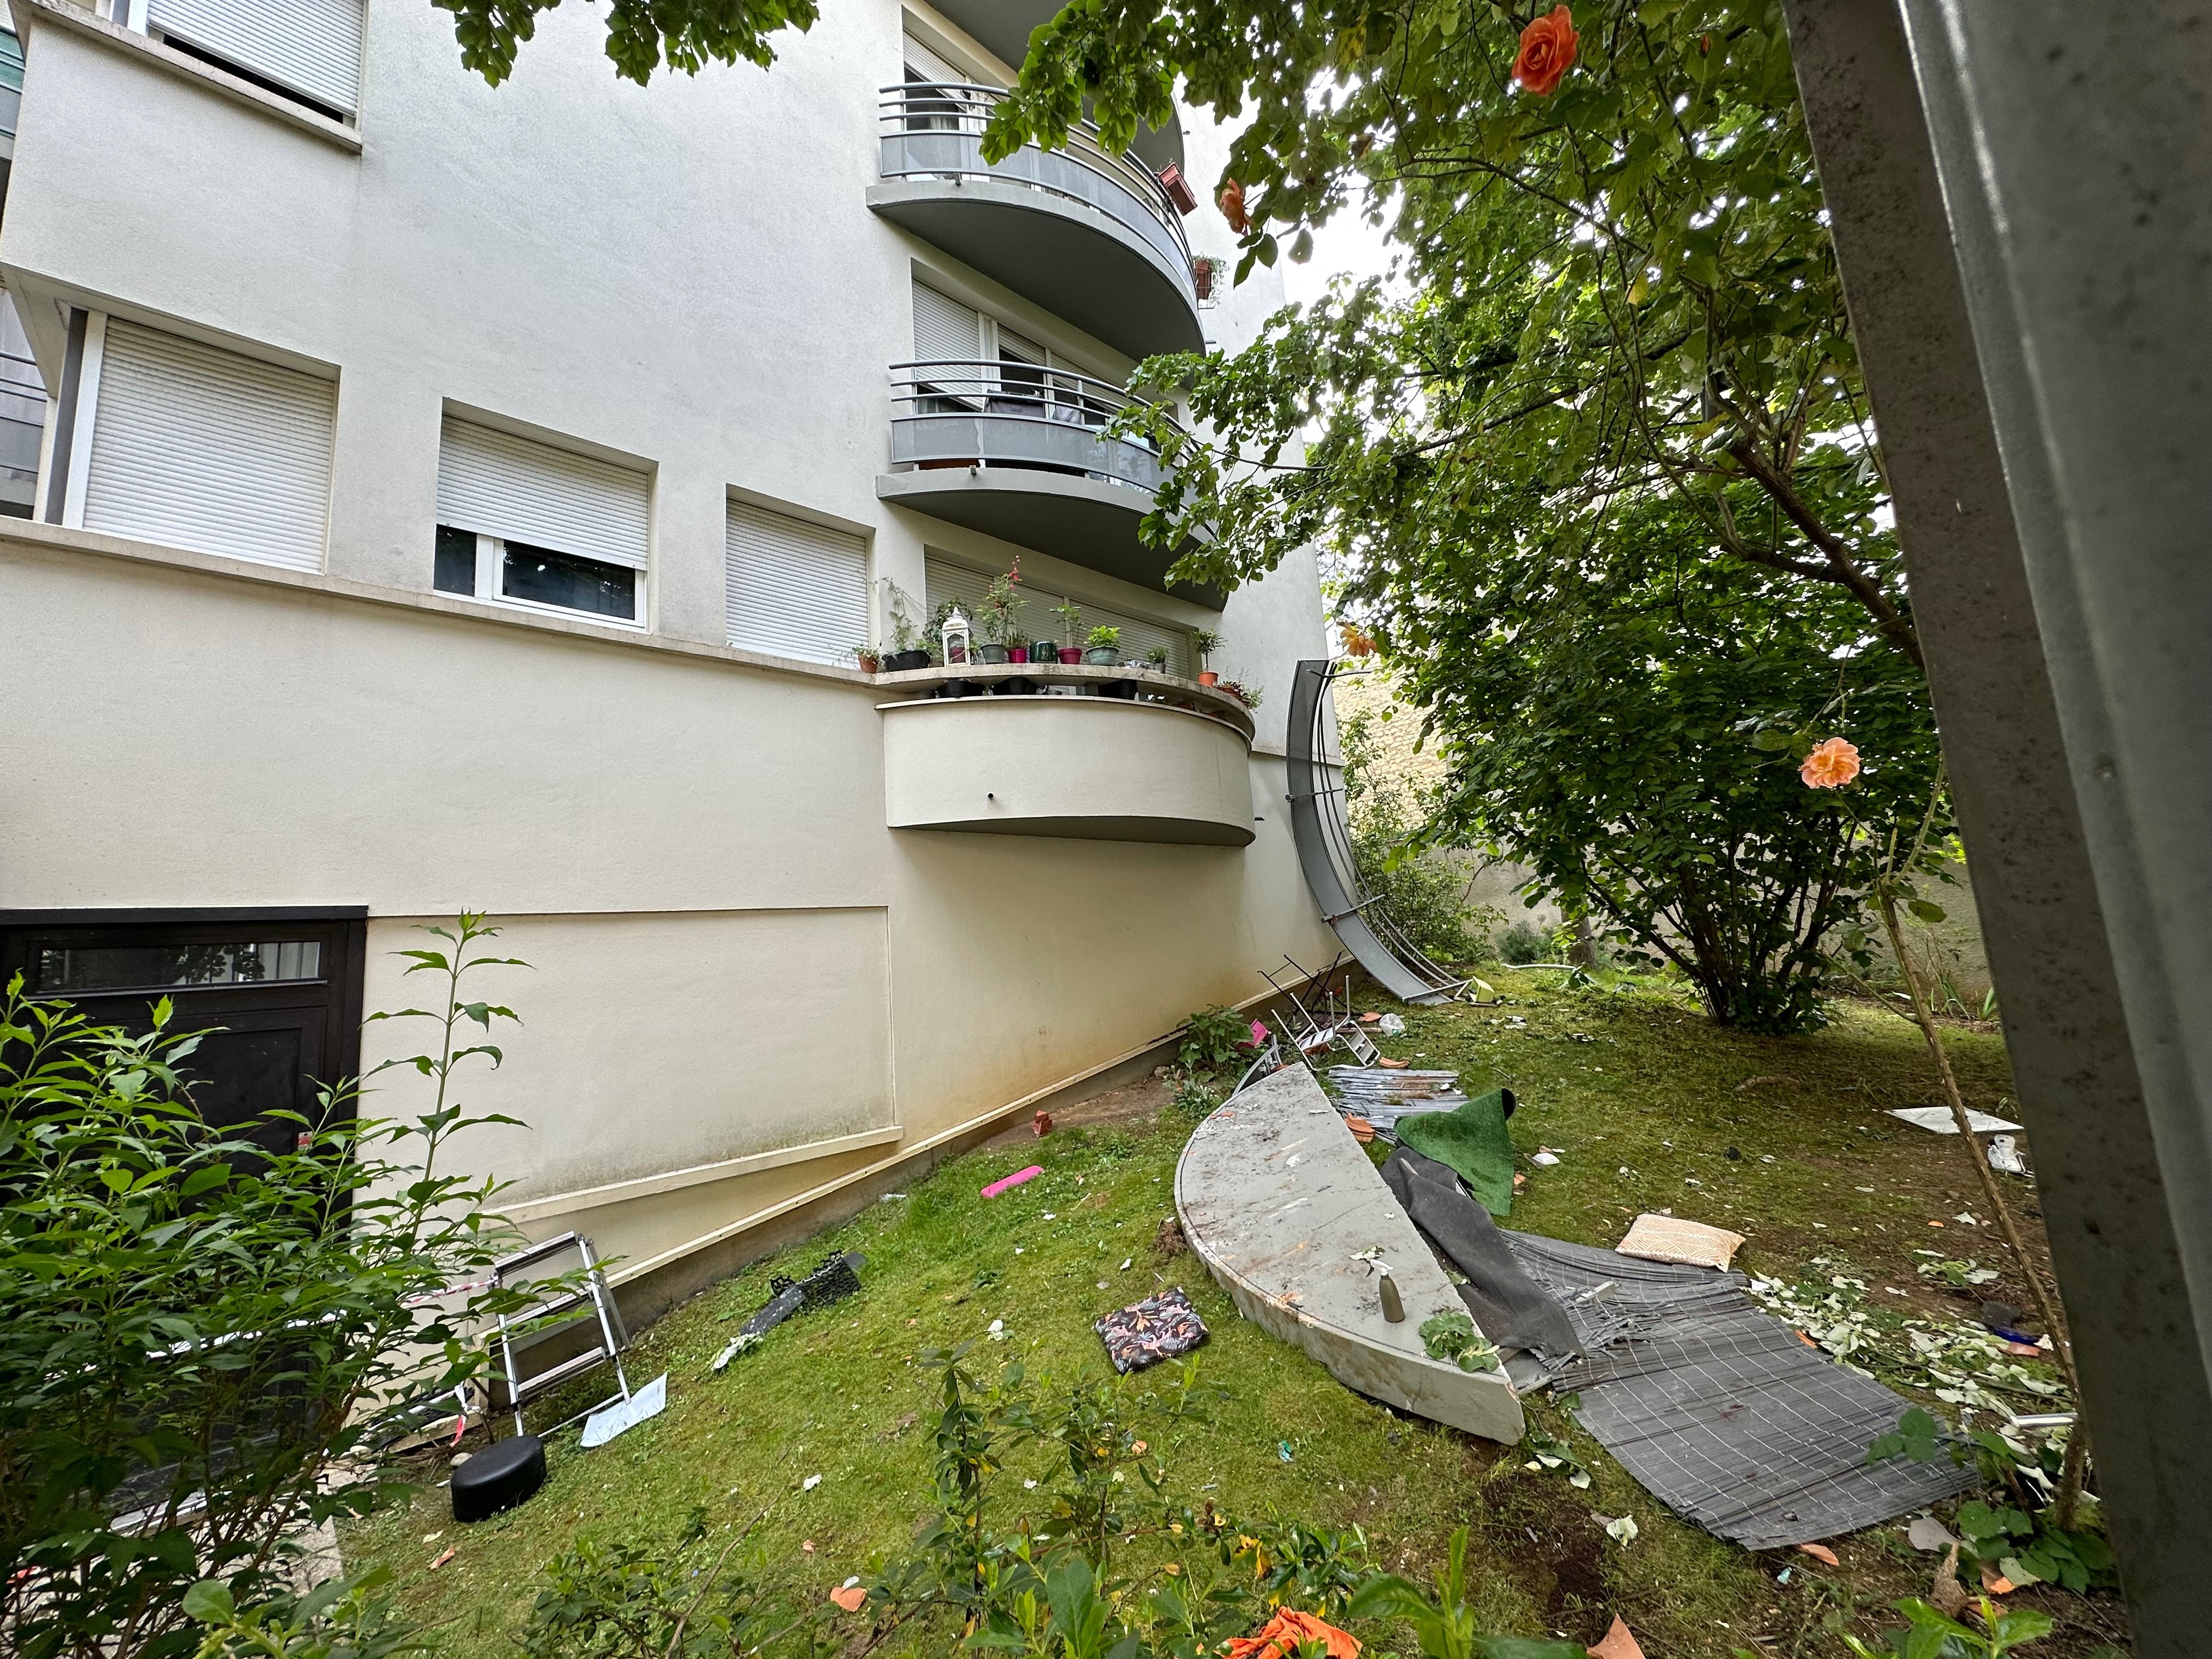 Un balcon s'était effondré vendredi soir de cet immeuble situé dans le XIIIe arrondissement de Paris (archives). LP/Paul Abran